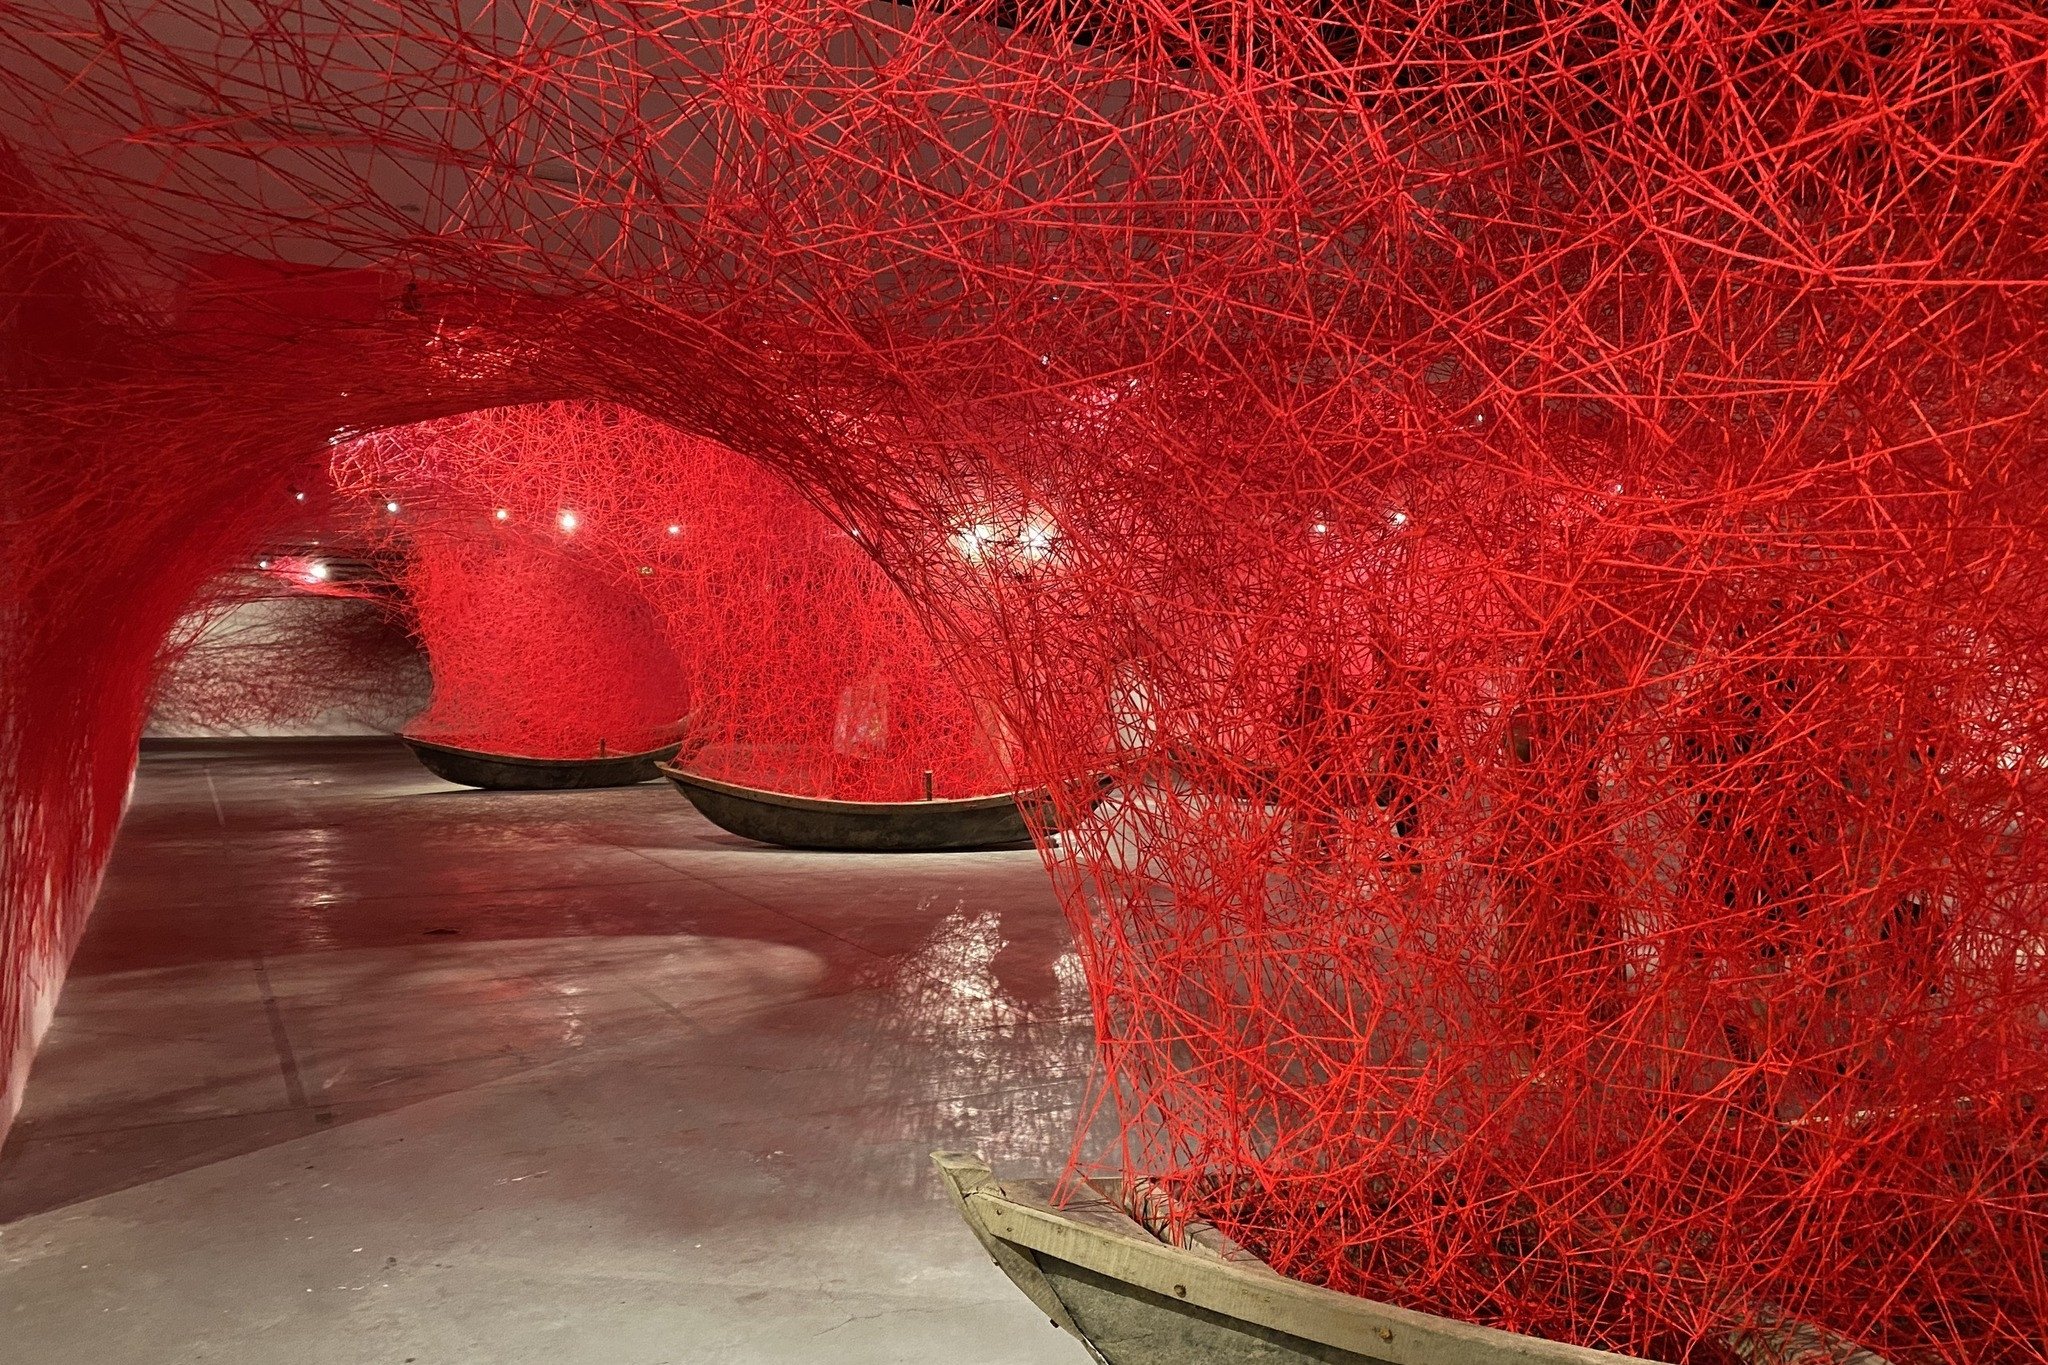 Khám phá 'Thủy triều cảm xúc' của nghệ sĩ nổi tiếng Chiharu Shiota